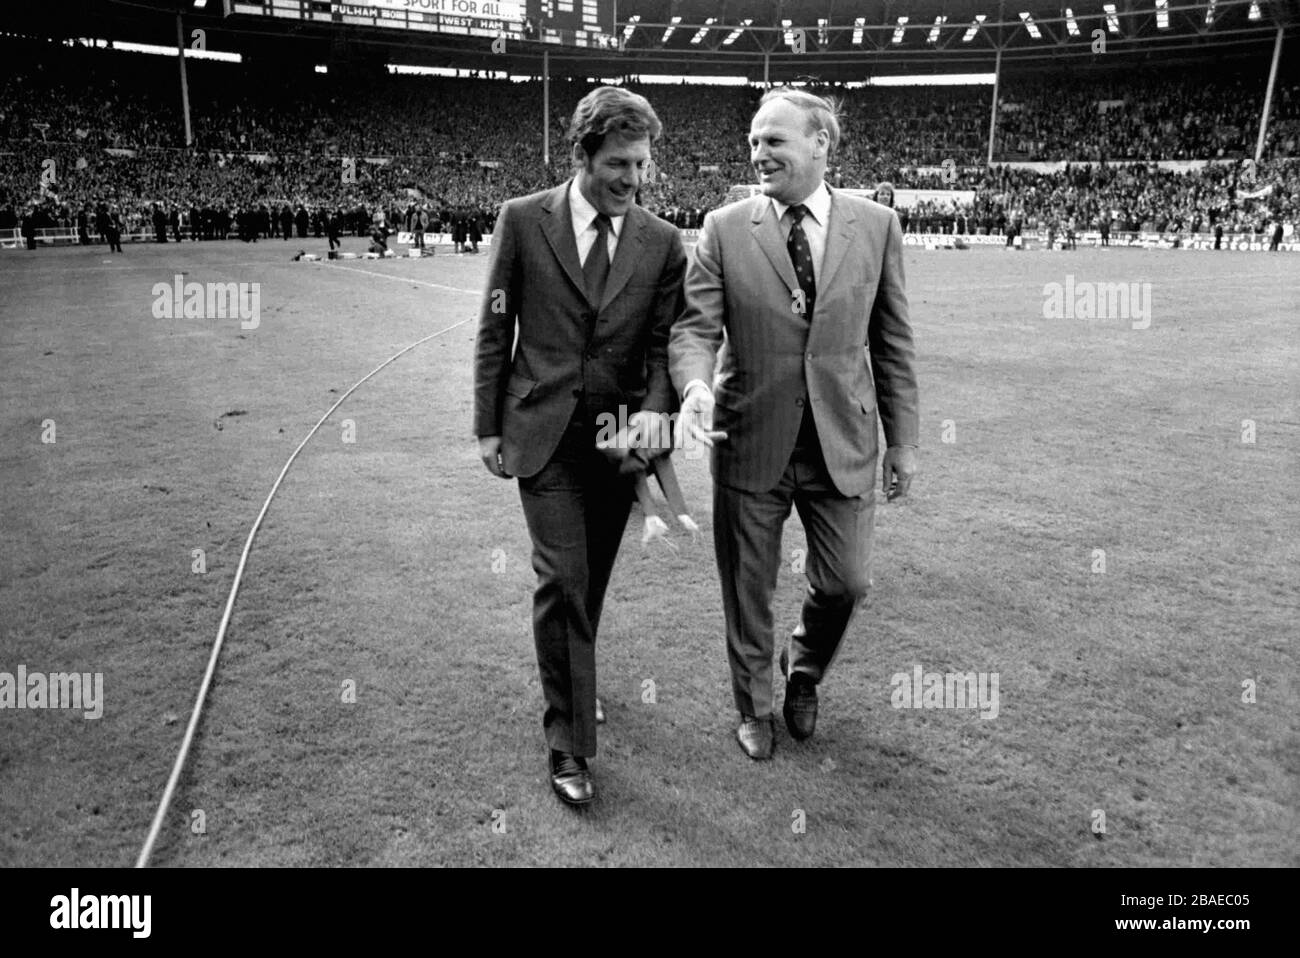 West Ham United Manager Ron Greenwood (r) und sein Assistent John Lyall (l) genießen ihren Spaziergang über den Wembley-Platz, nachdem ihr Team mit 2:0 gewonnen hat Stockfoto